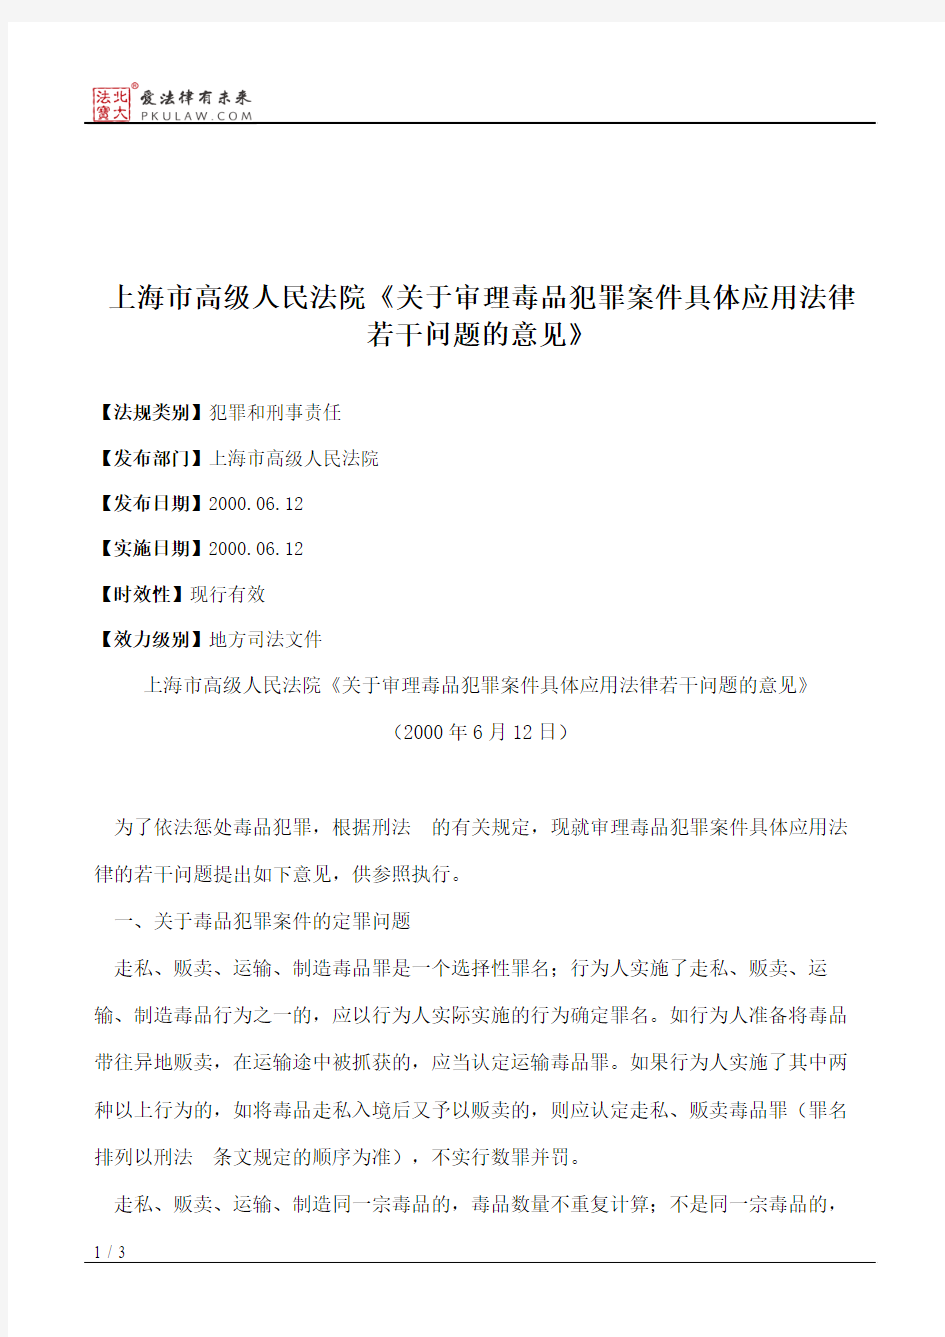 上海市高级人民法院《关于审理毒品犯罪案件具体应用法律若干问题